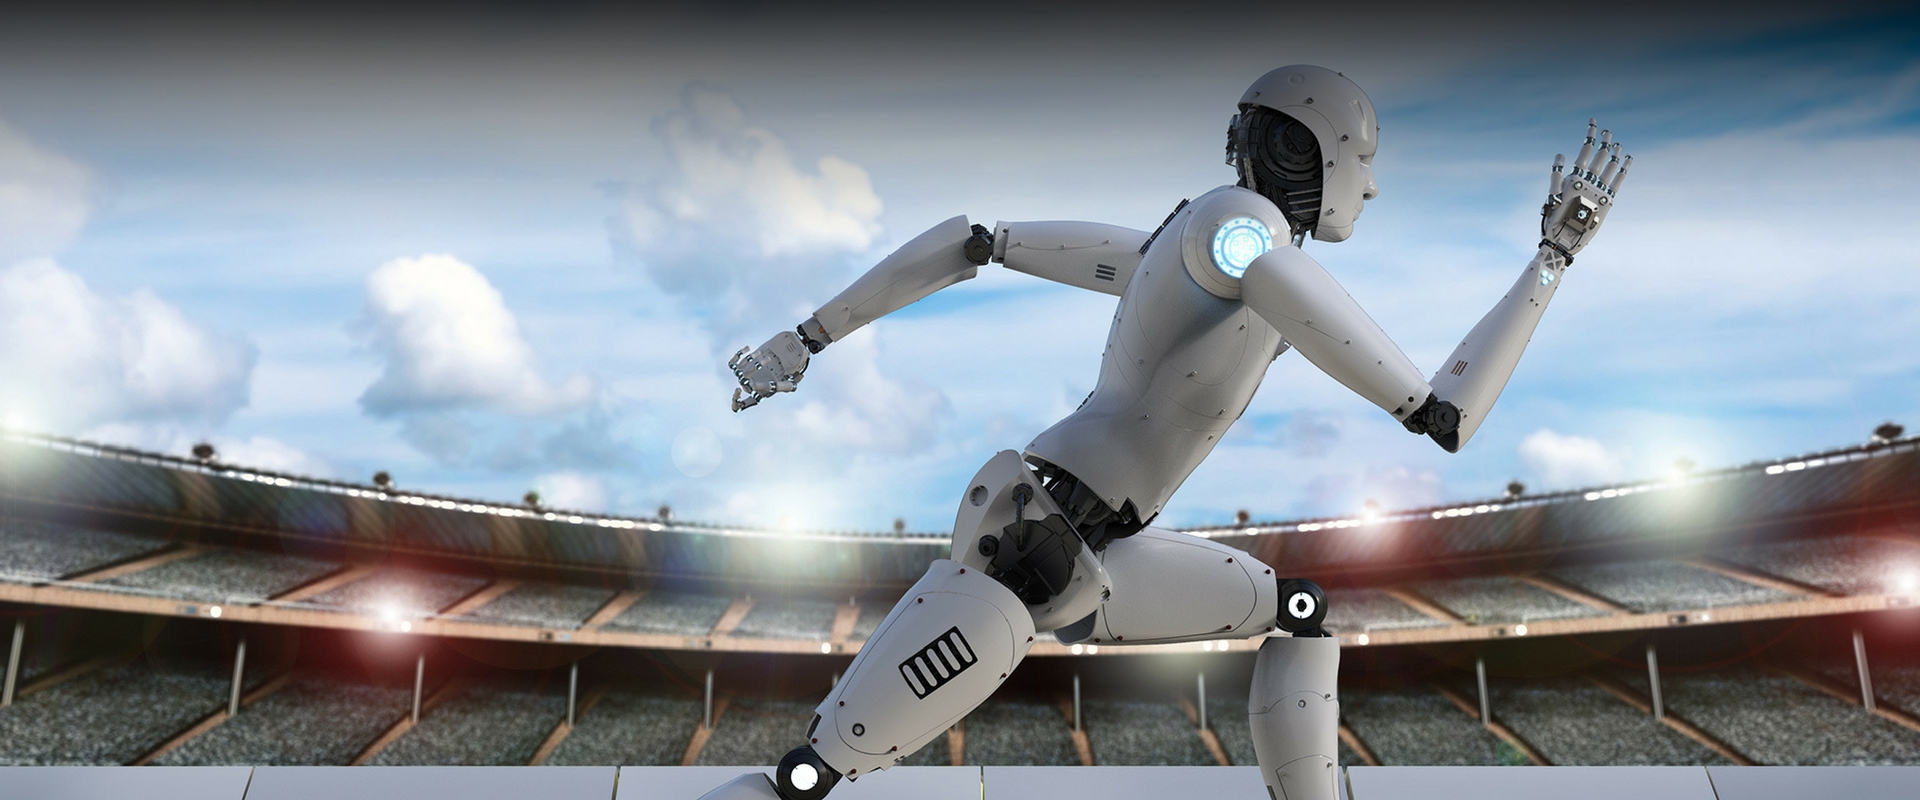 intelligenza artificiale e sport 4.0